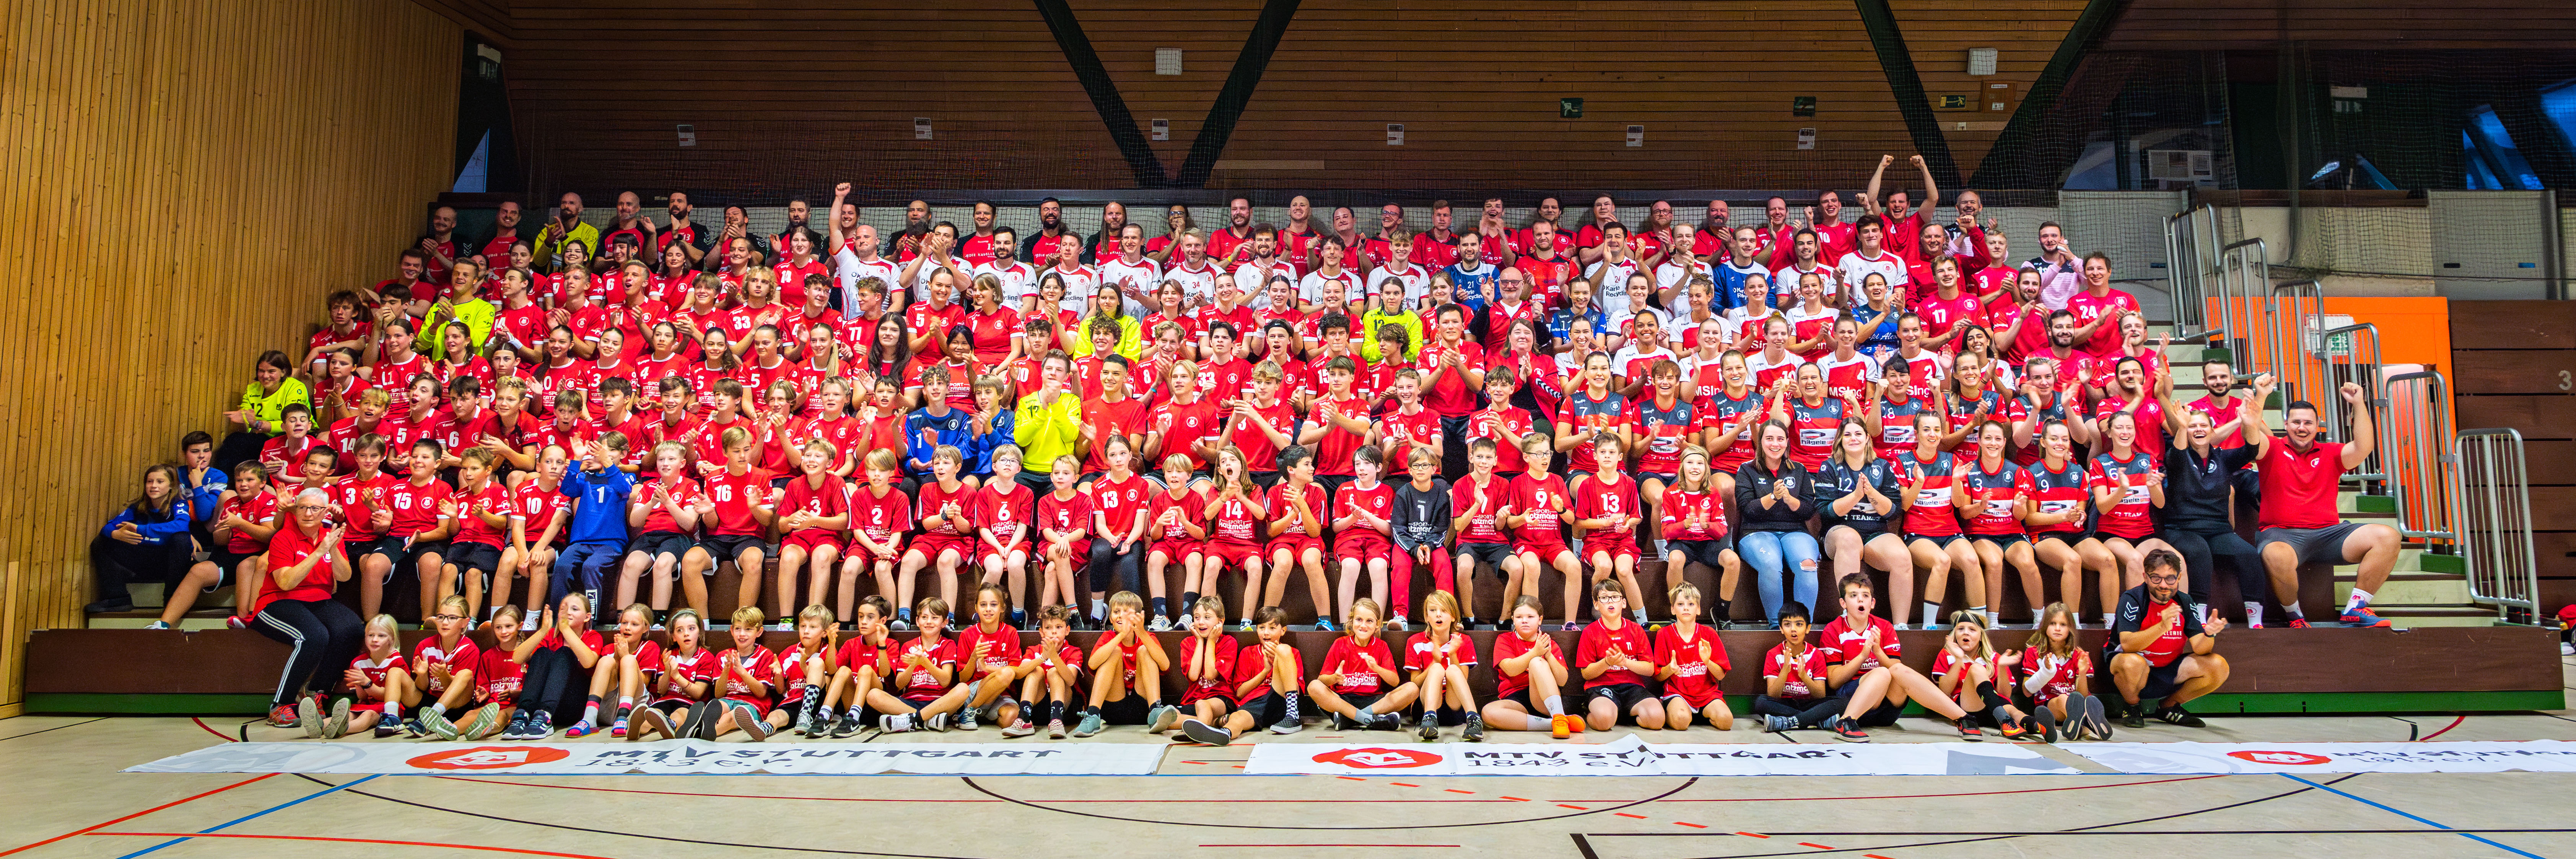 Das Bild zeigt alle 300 Handballerinnen und Handballer auf der Tribüne sitzend